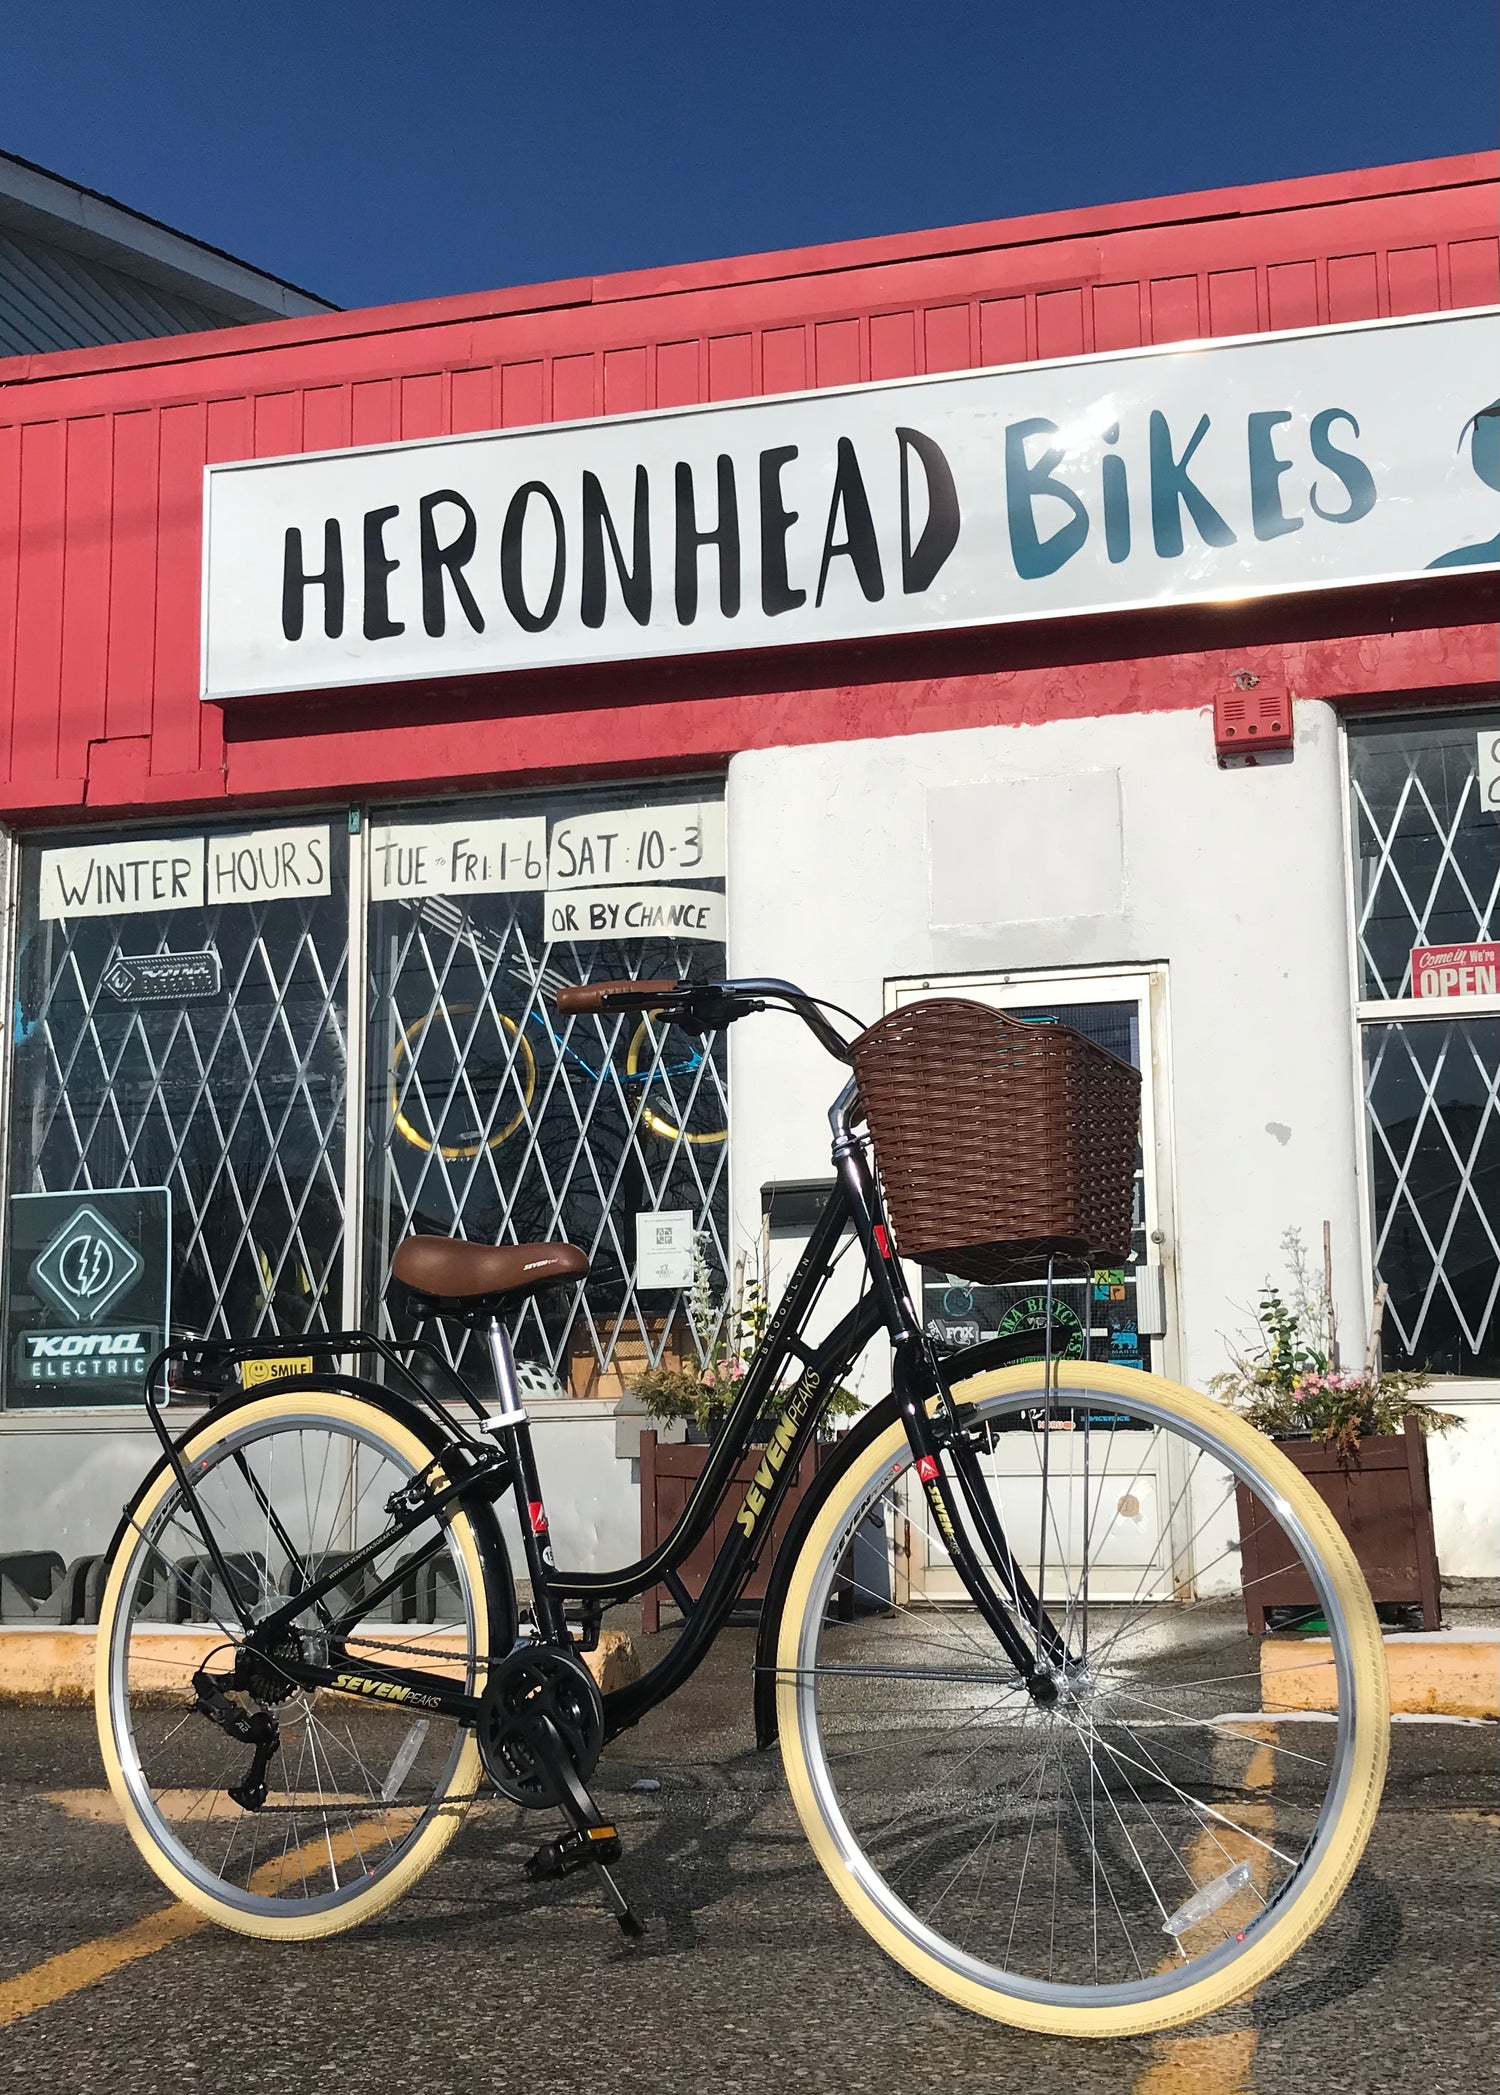 Hybrid Bikes